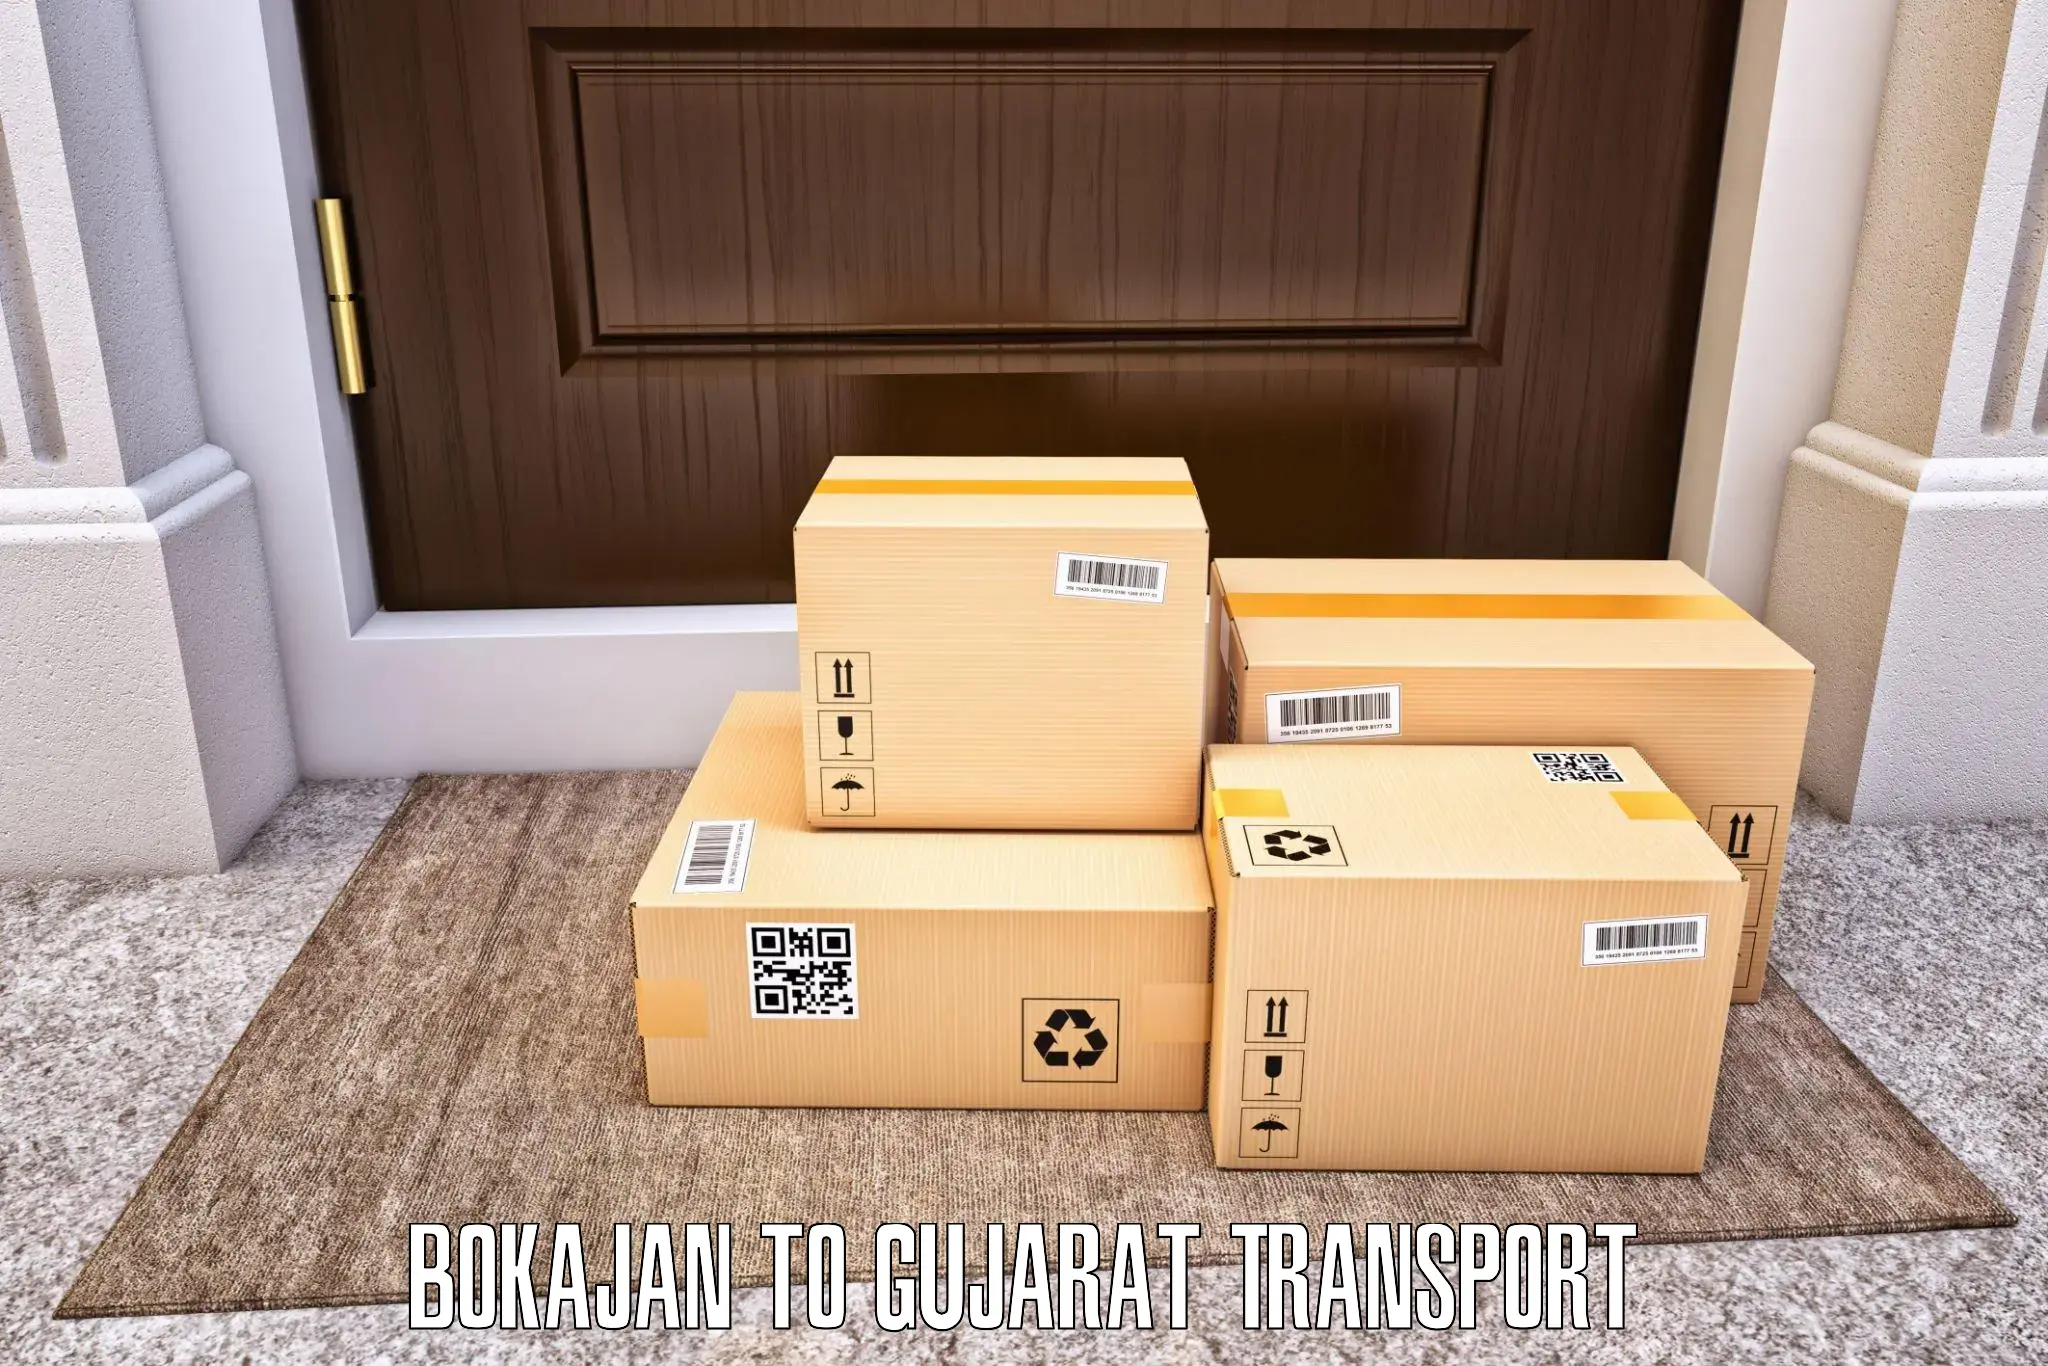 Online transport booking Bokajan to Jhagadia